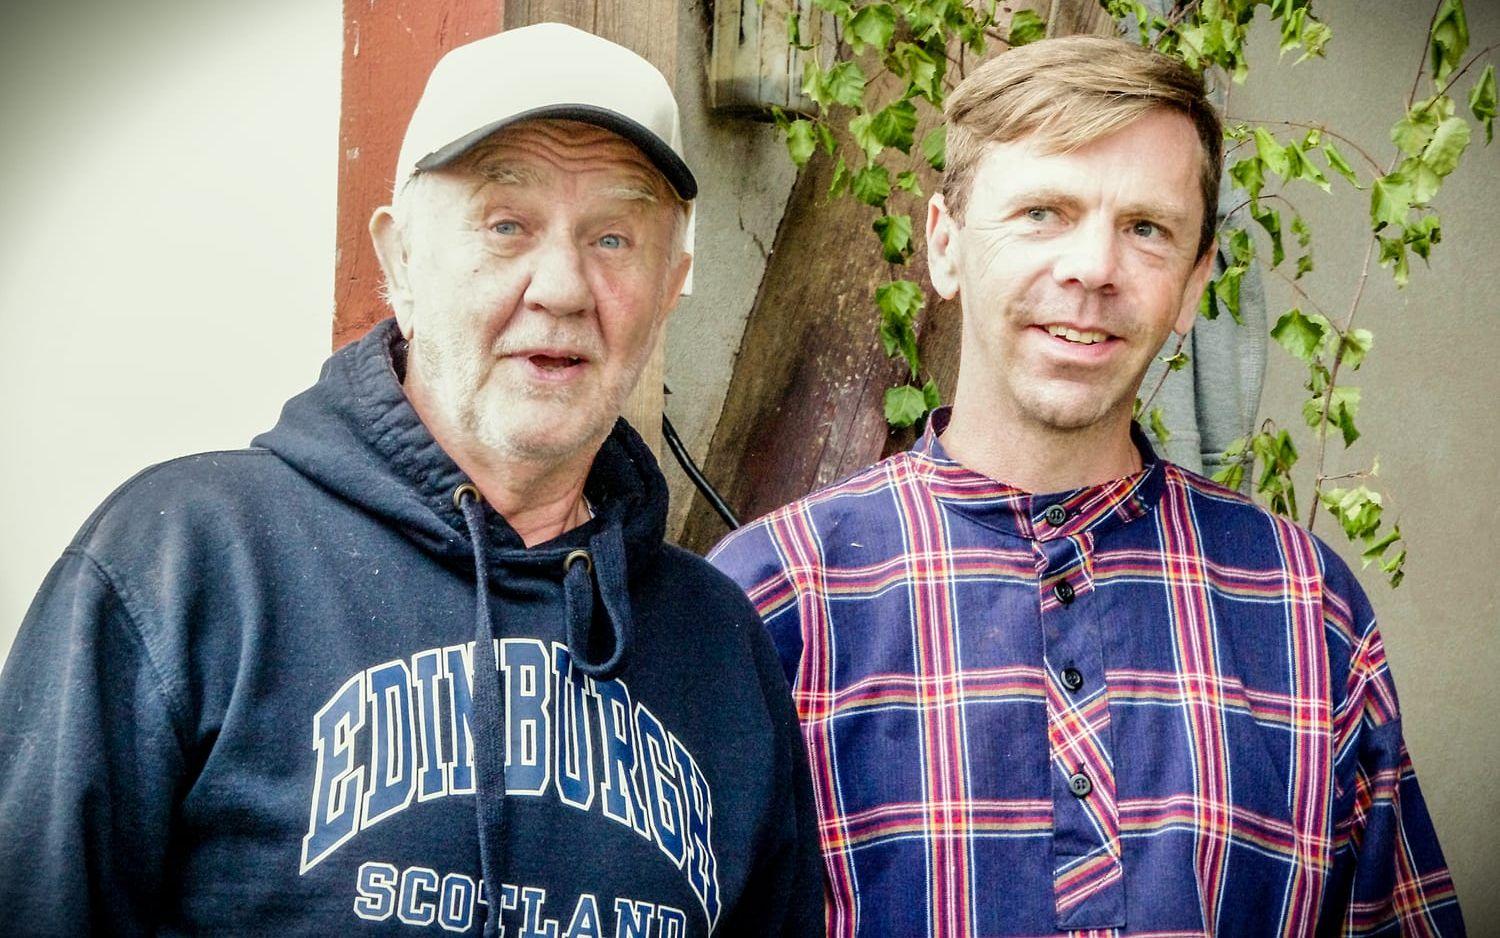 Lars Edner och Magnus Bandgren har kamperat ihop i många år med olika uppsättningar och föreställningar.